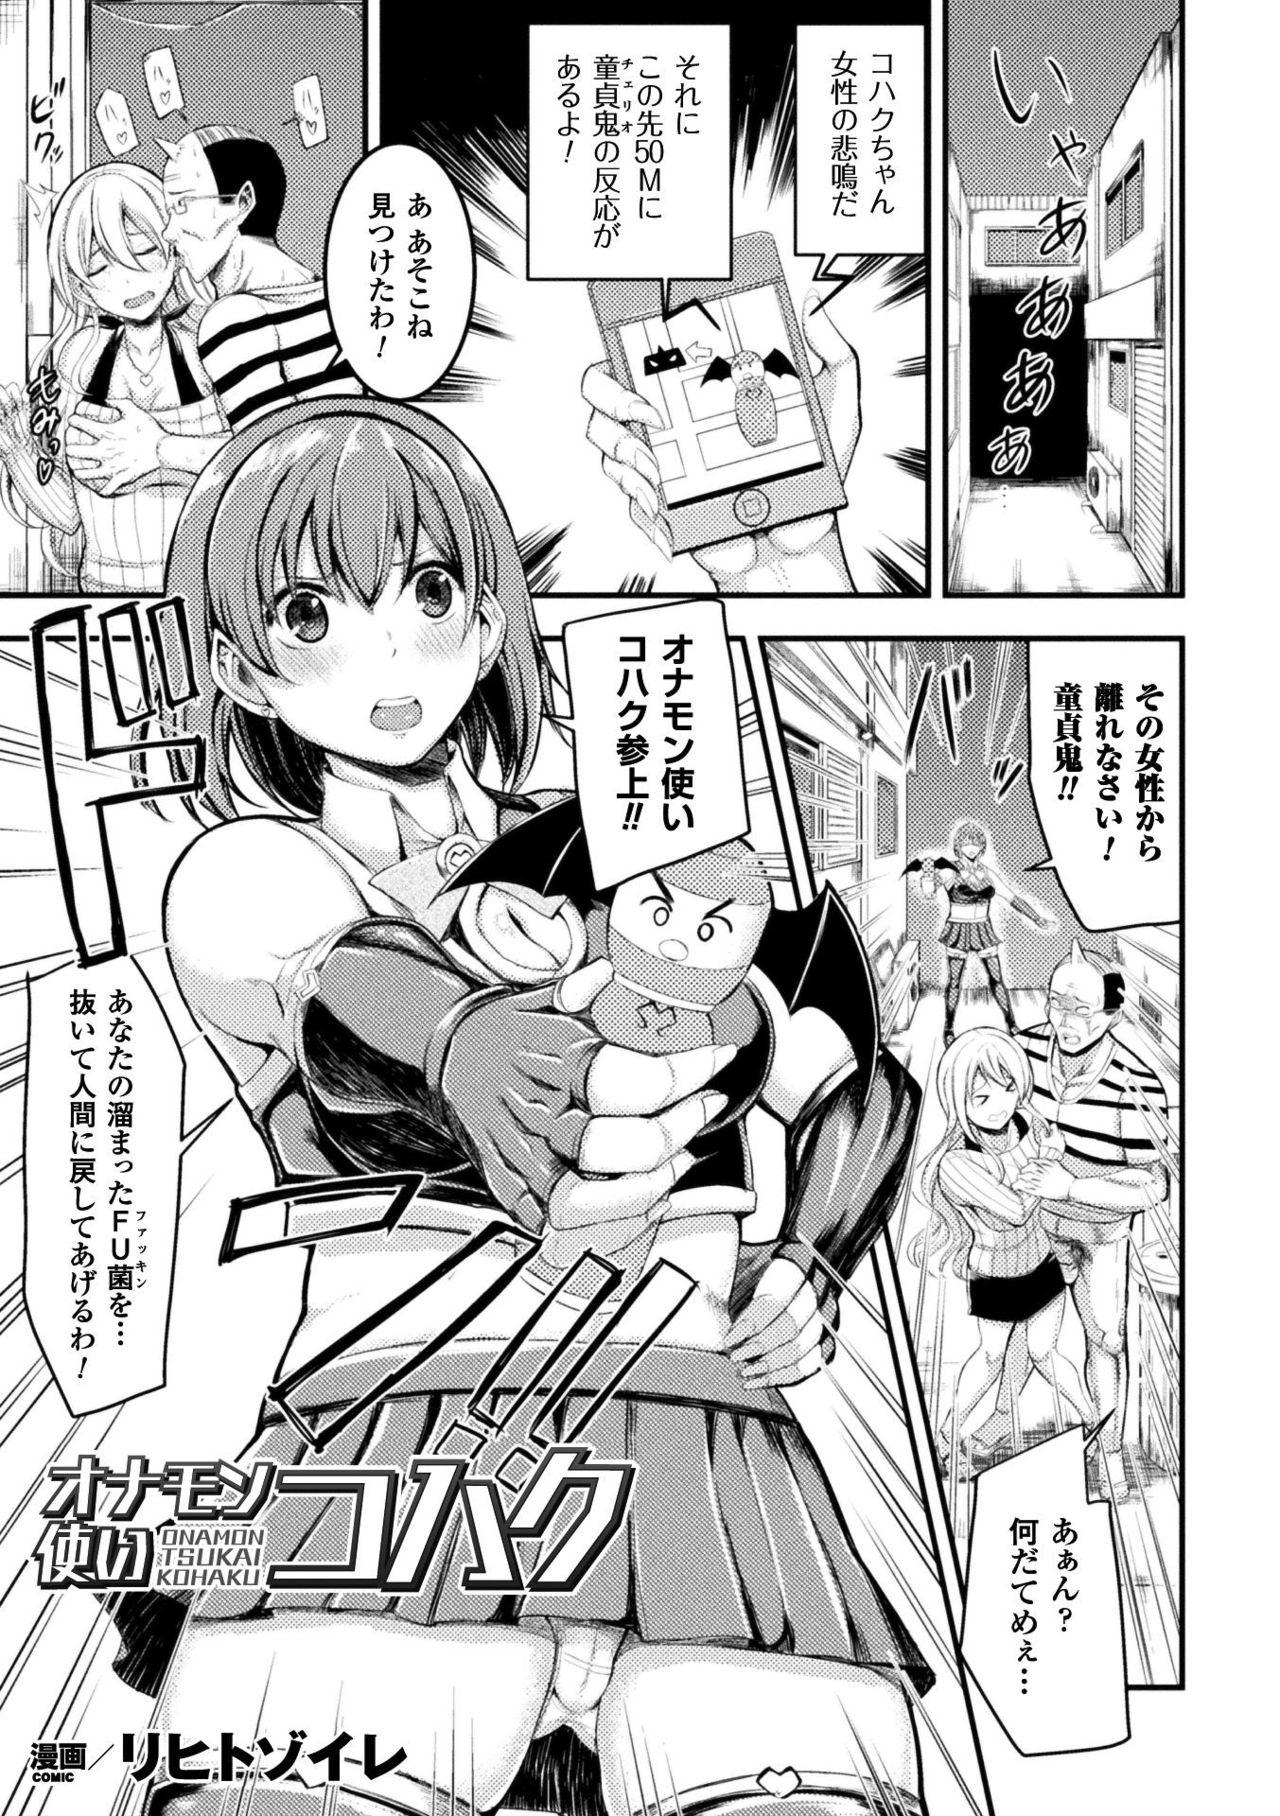 Seigi no Heroine Kangoku File Vol. 16 94